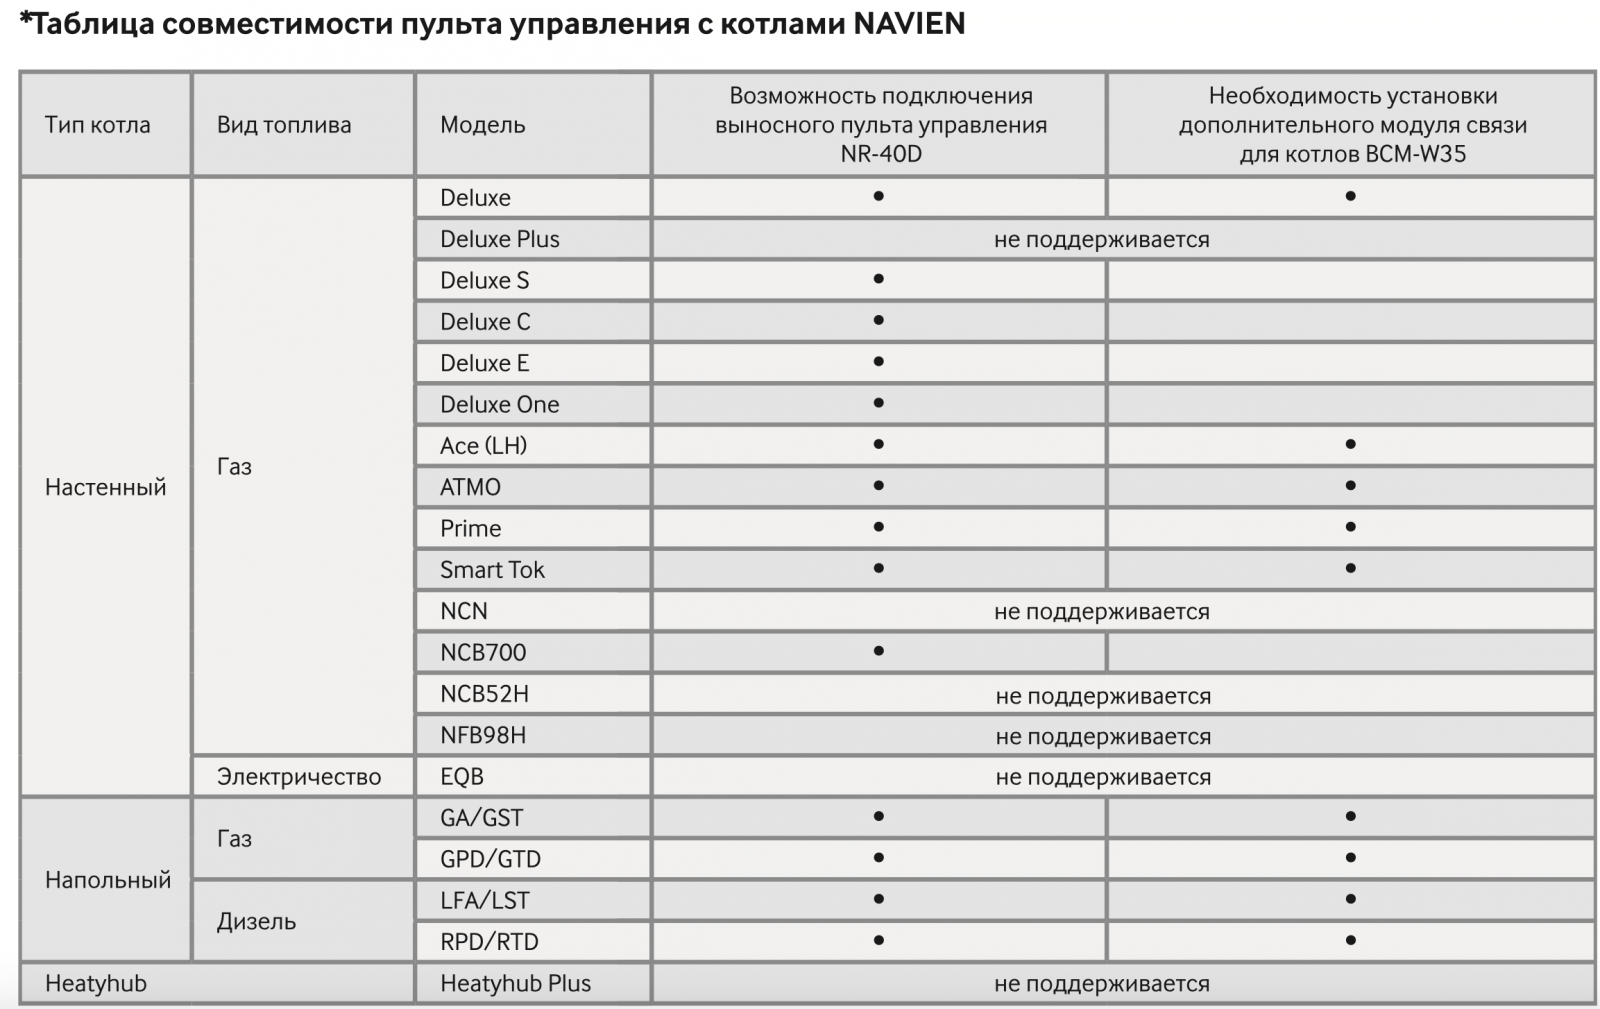 Таблица совместимости пульта управления с котлами NAVIEN